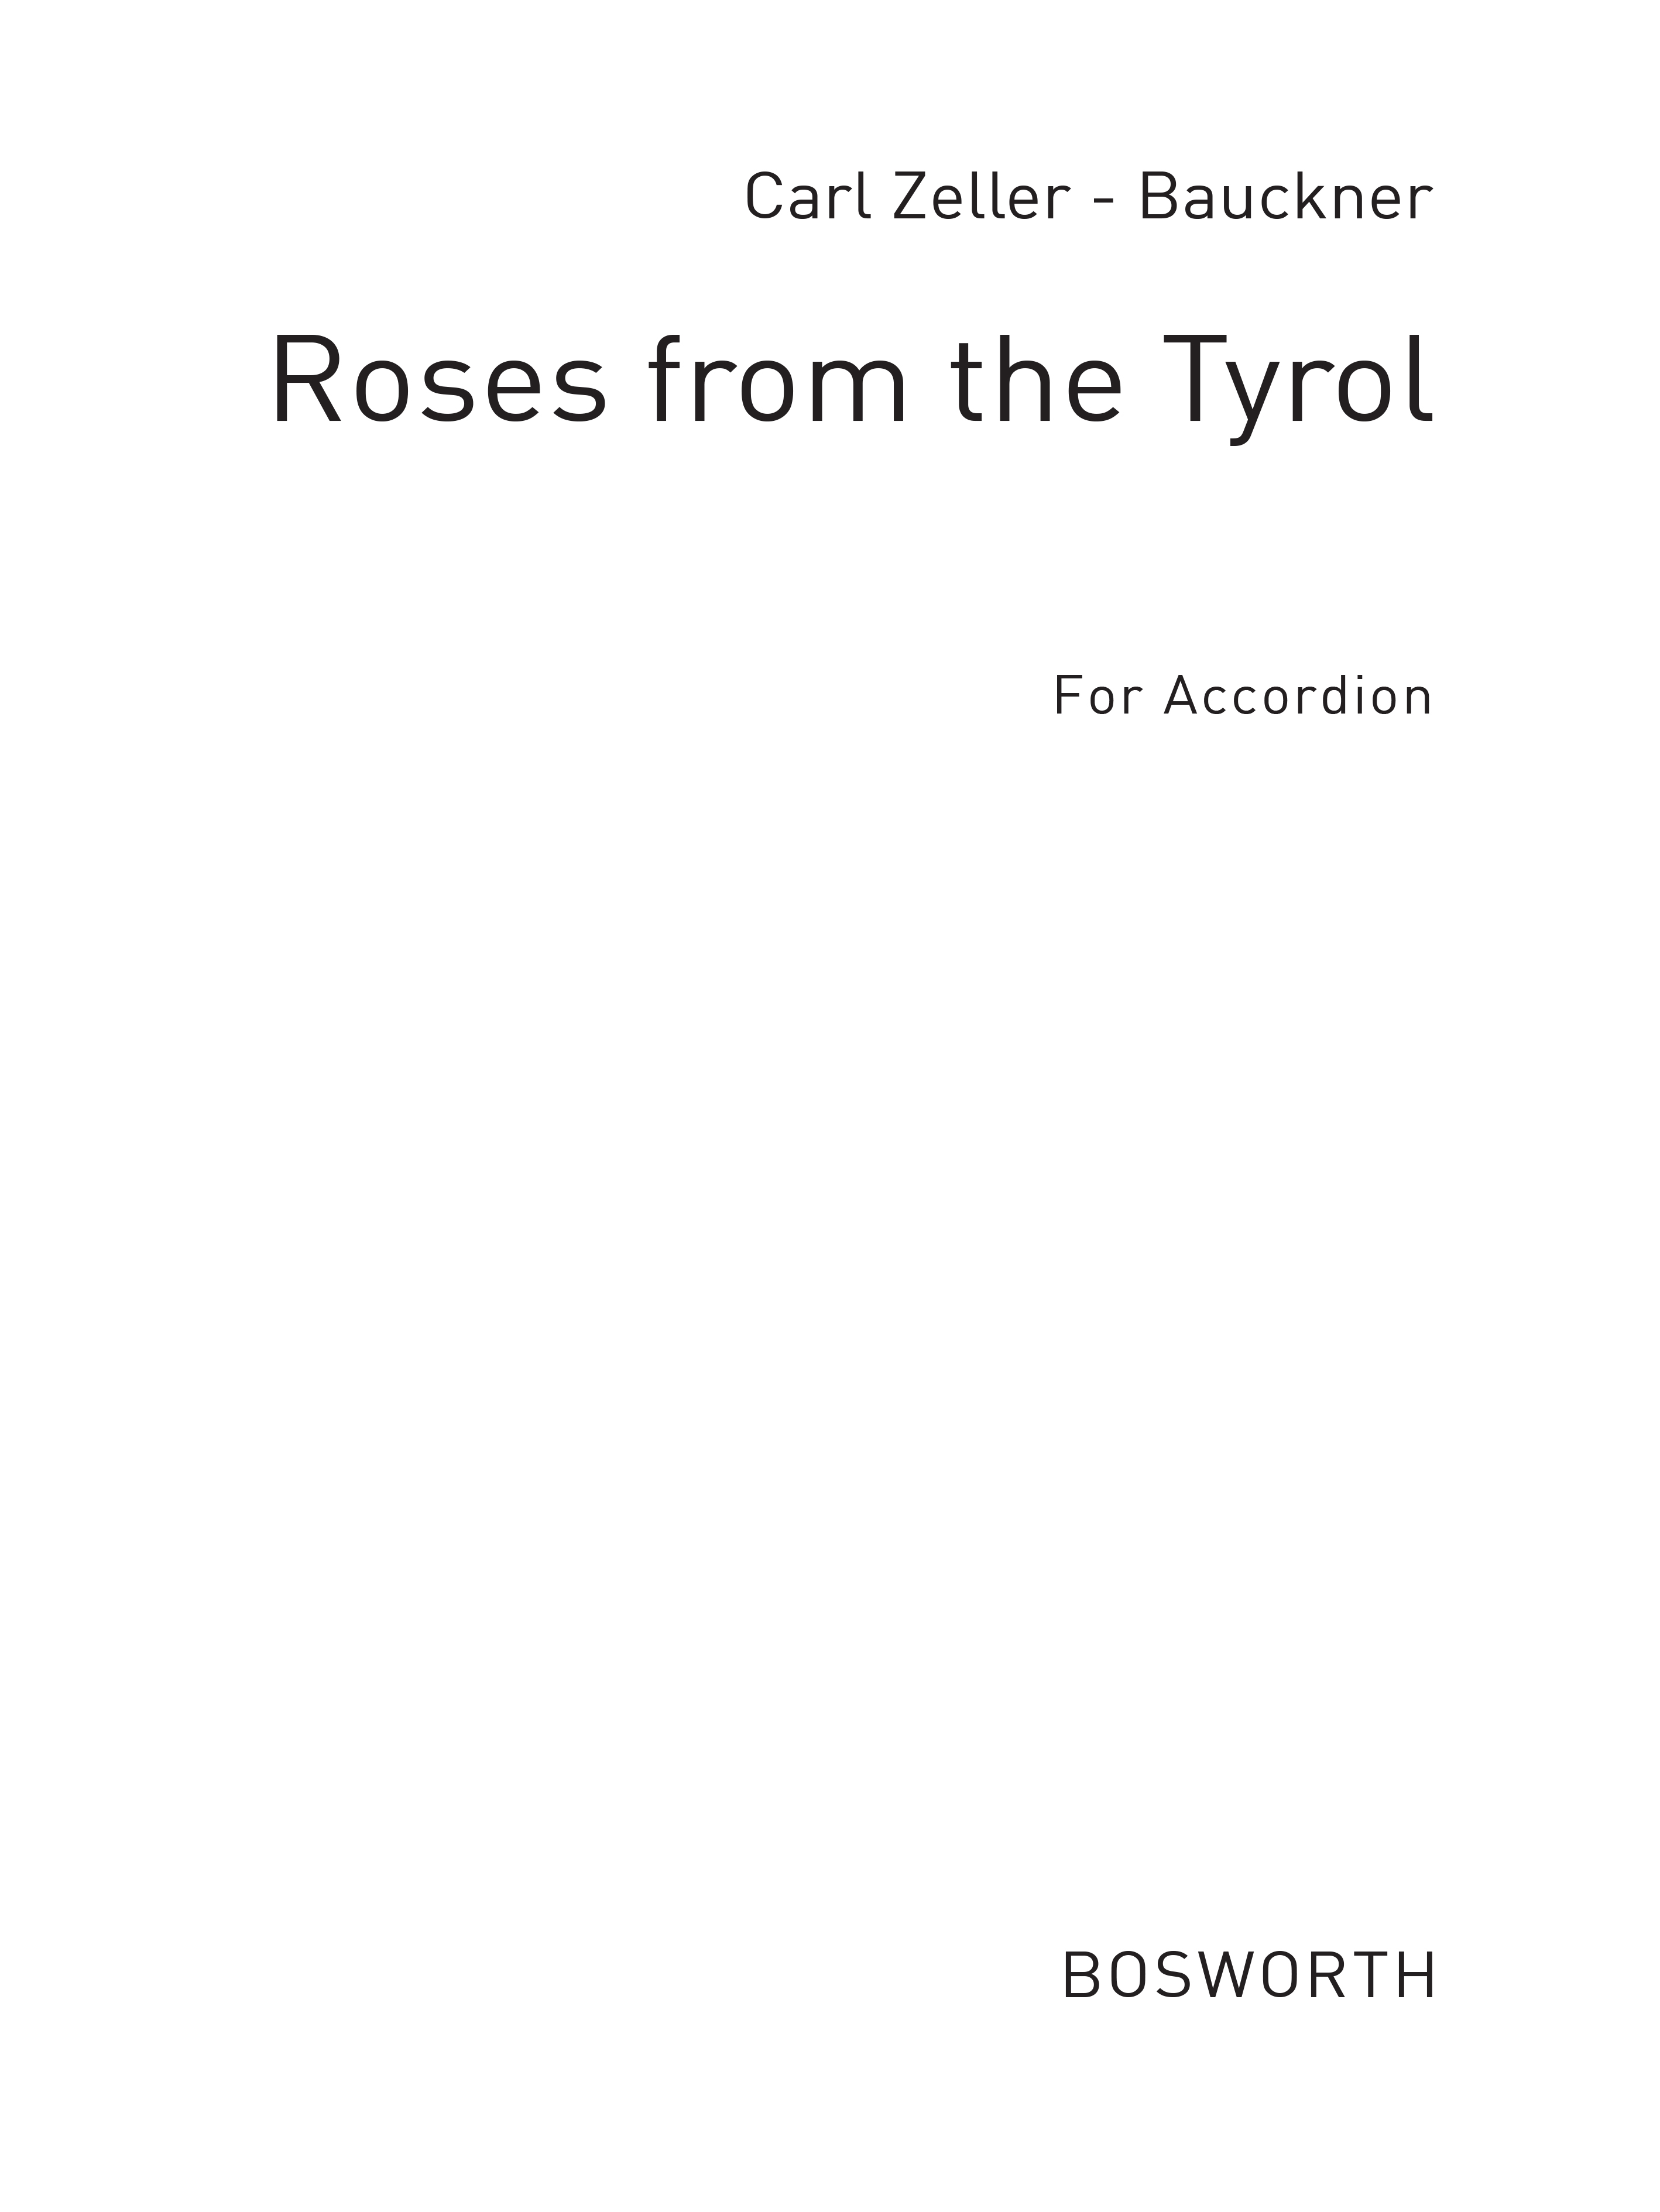 Zeller, C Roses From Tyrol Acdn